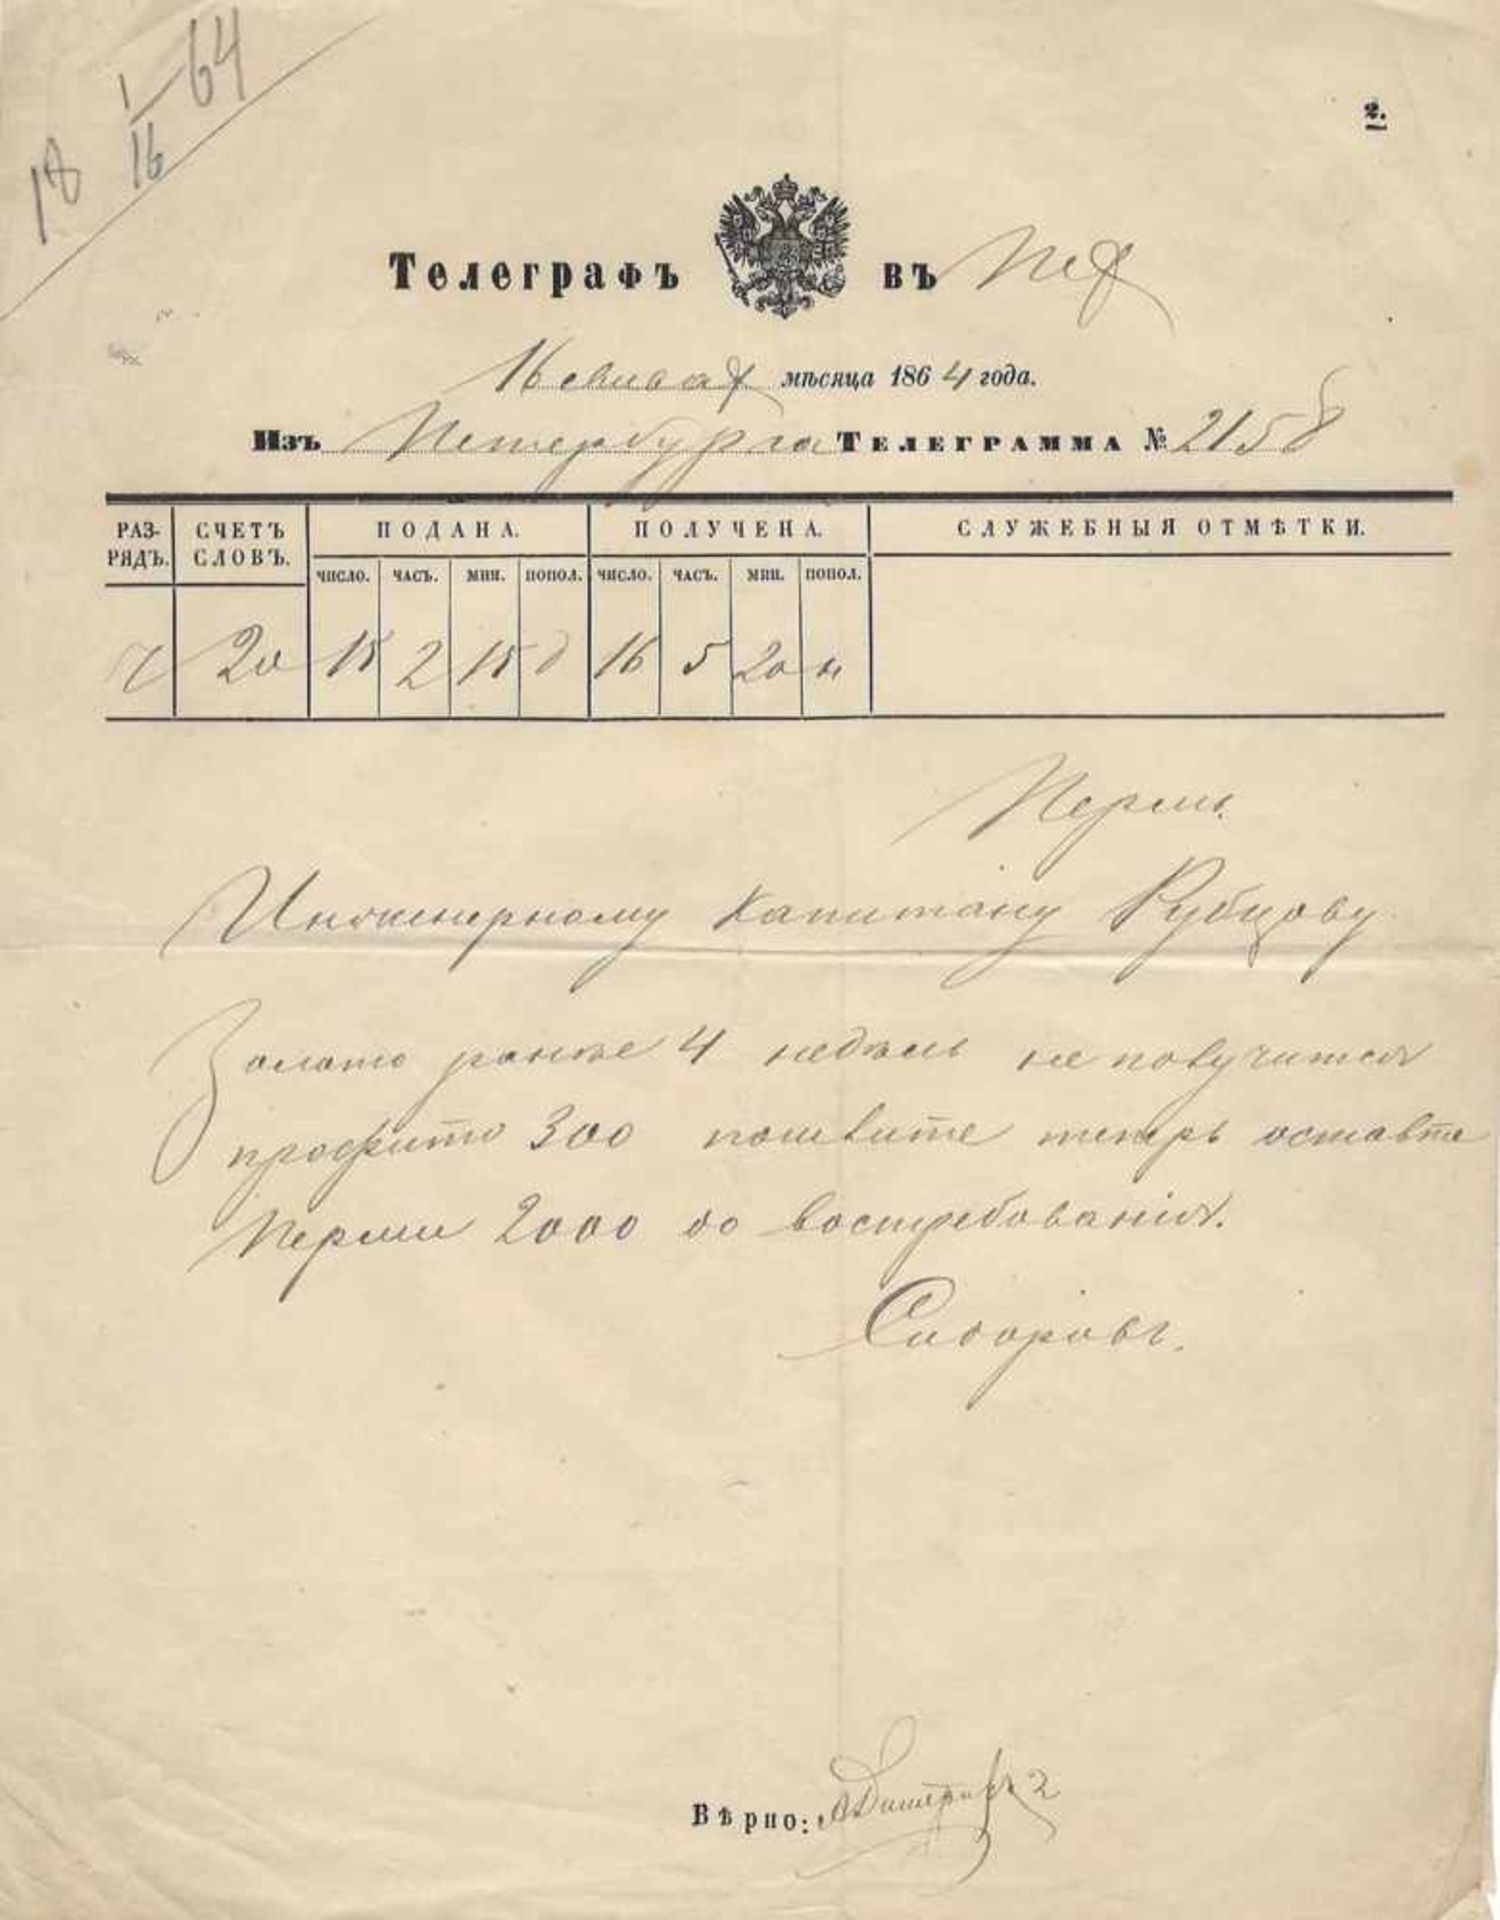 Telegram №2158 for engineering captain Rubtsov. 1864. - 27x21 cm.27x21 cm.Telegram №2158 for